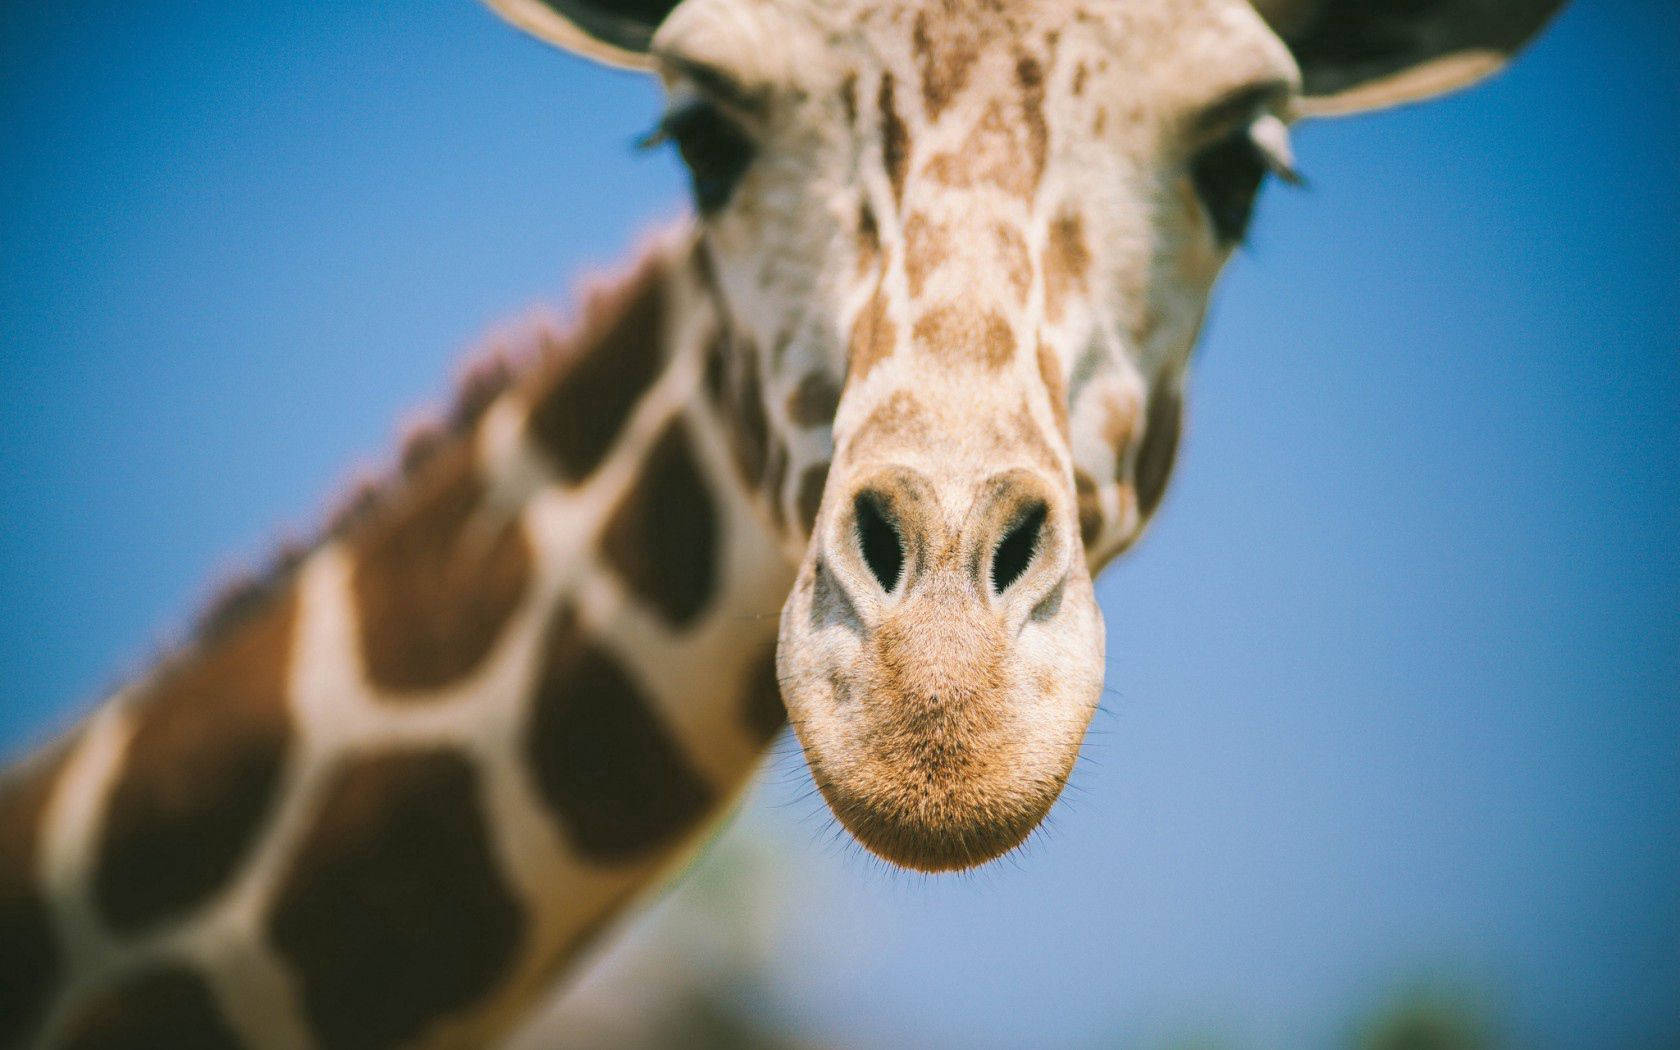 Blurry Giraffe's Face